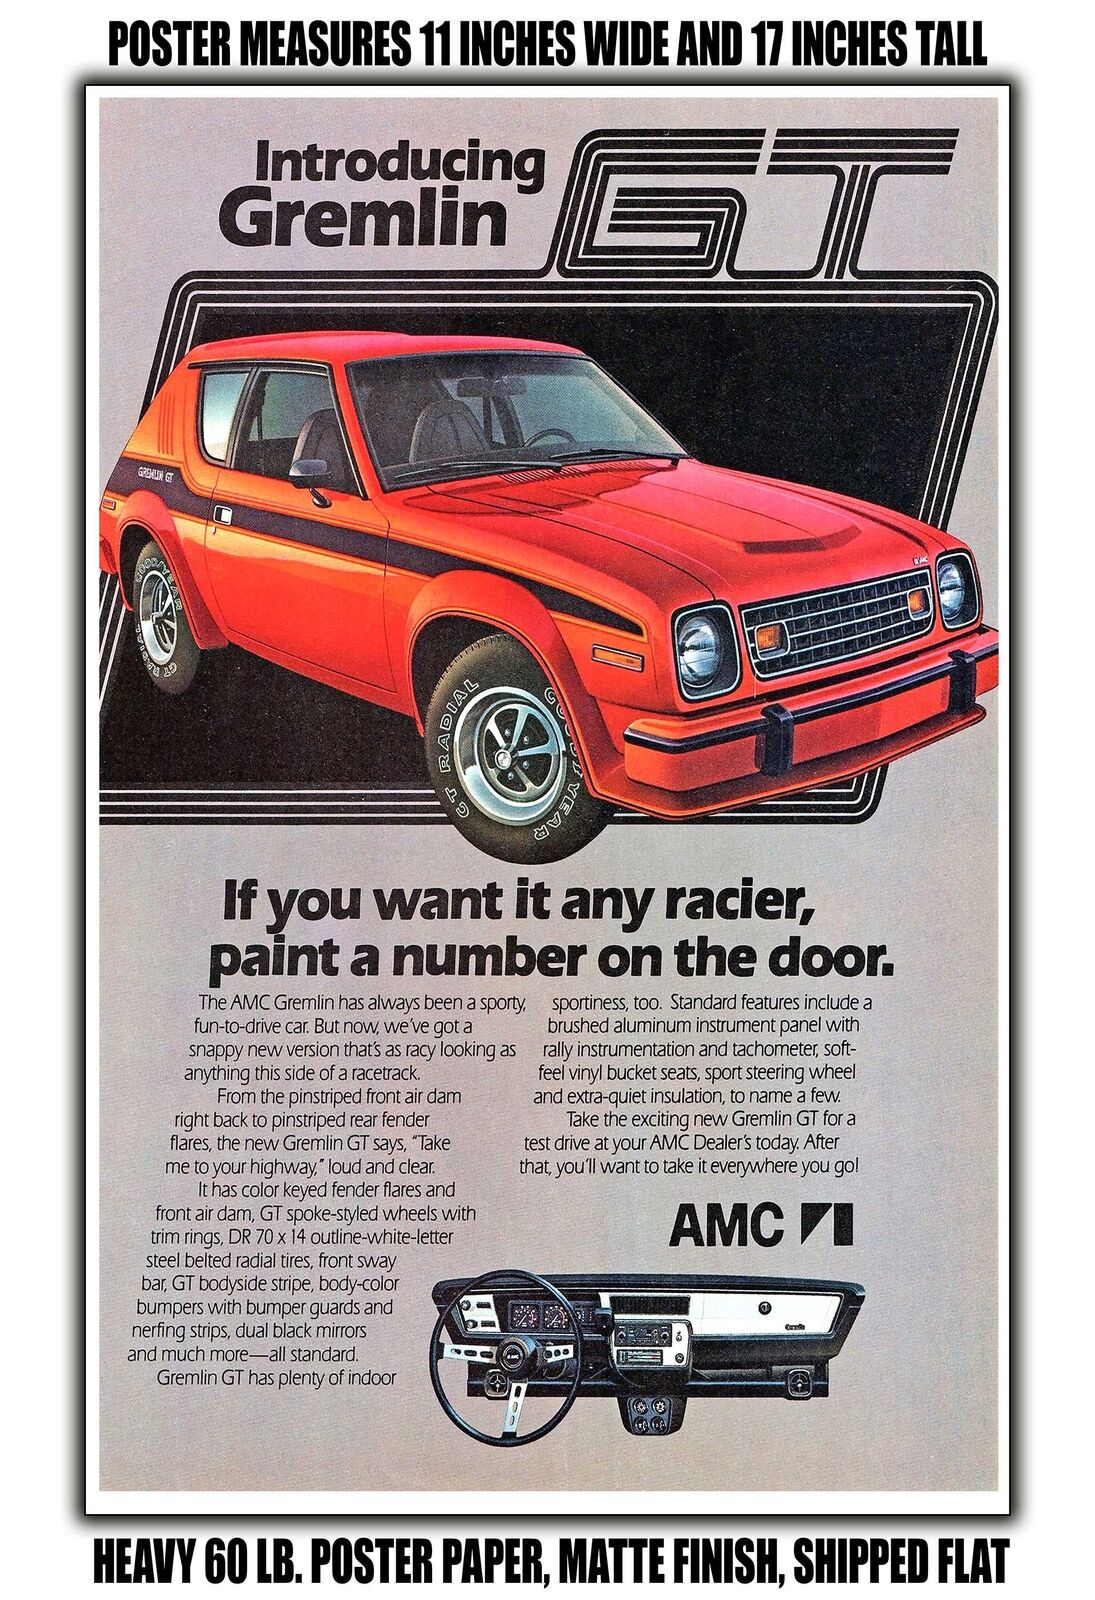 11x17 POSTER - 1978 AMC Gremlin GT